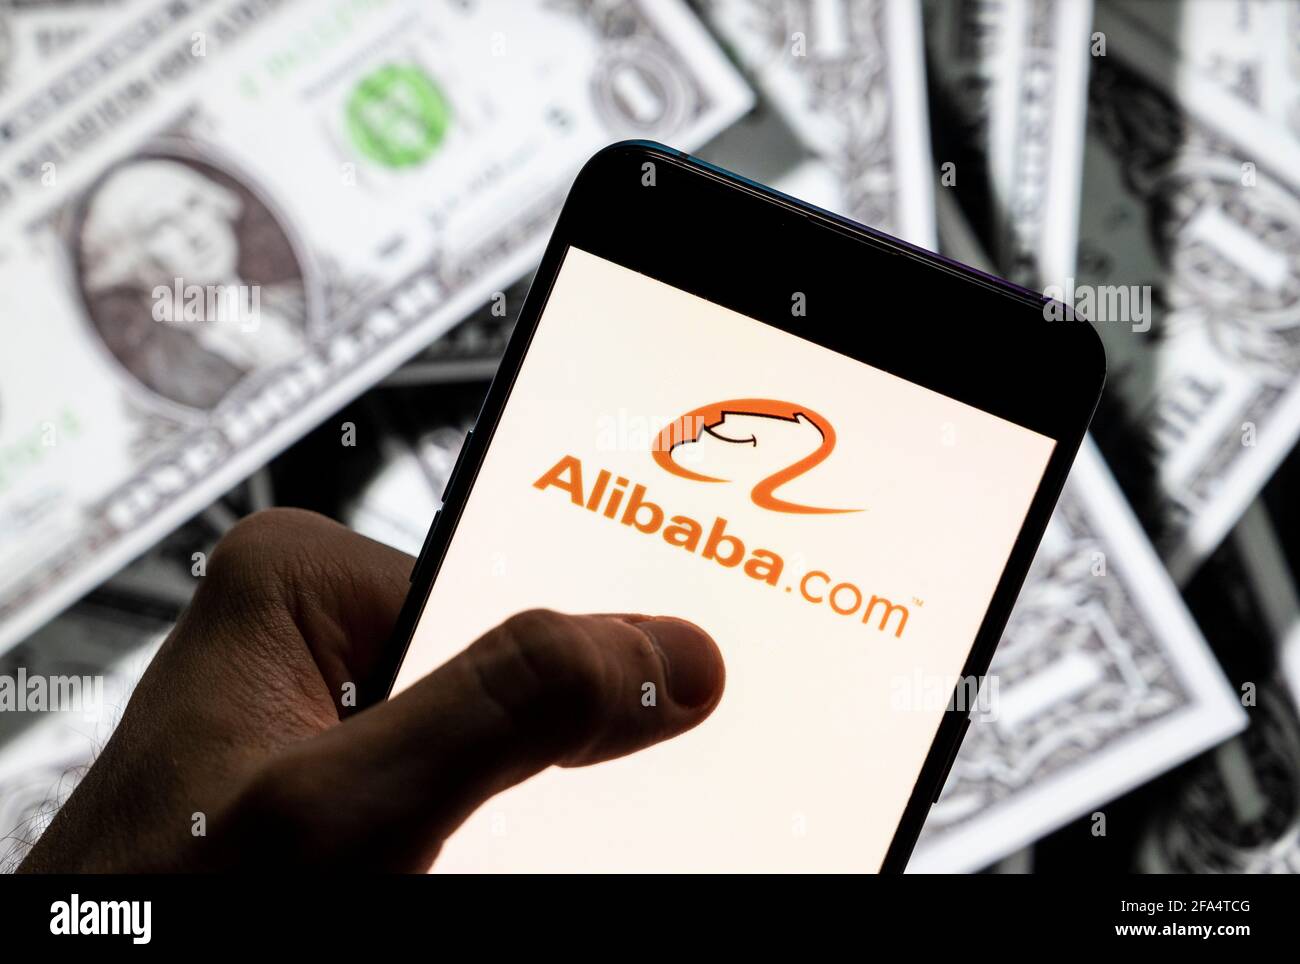 Dans cette photo illustration le conglomérat multinational chinois spécialisé dans l'e-commerce de détail Internet ai et la technologie, Alibaba (Alibaba.com) logo vu sur un écran d'appareil mobile Android avec la monnaie de l'icône dollar des États-Unis, symbole d'icône $ dans l'arrière-plan. Banque D'Images